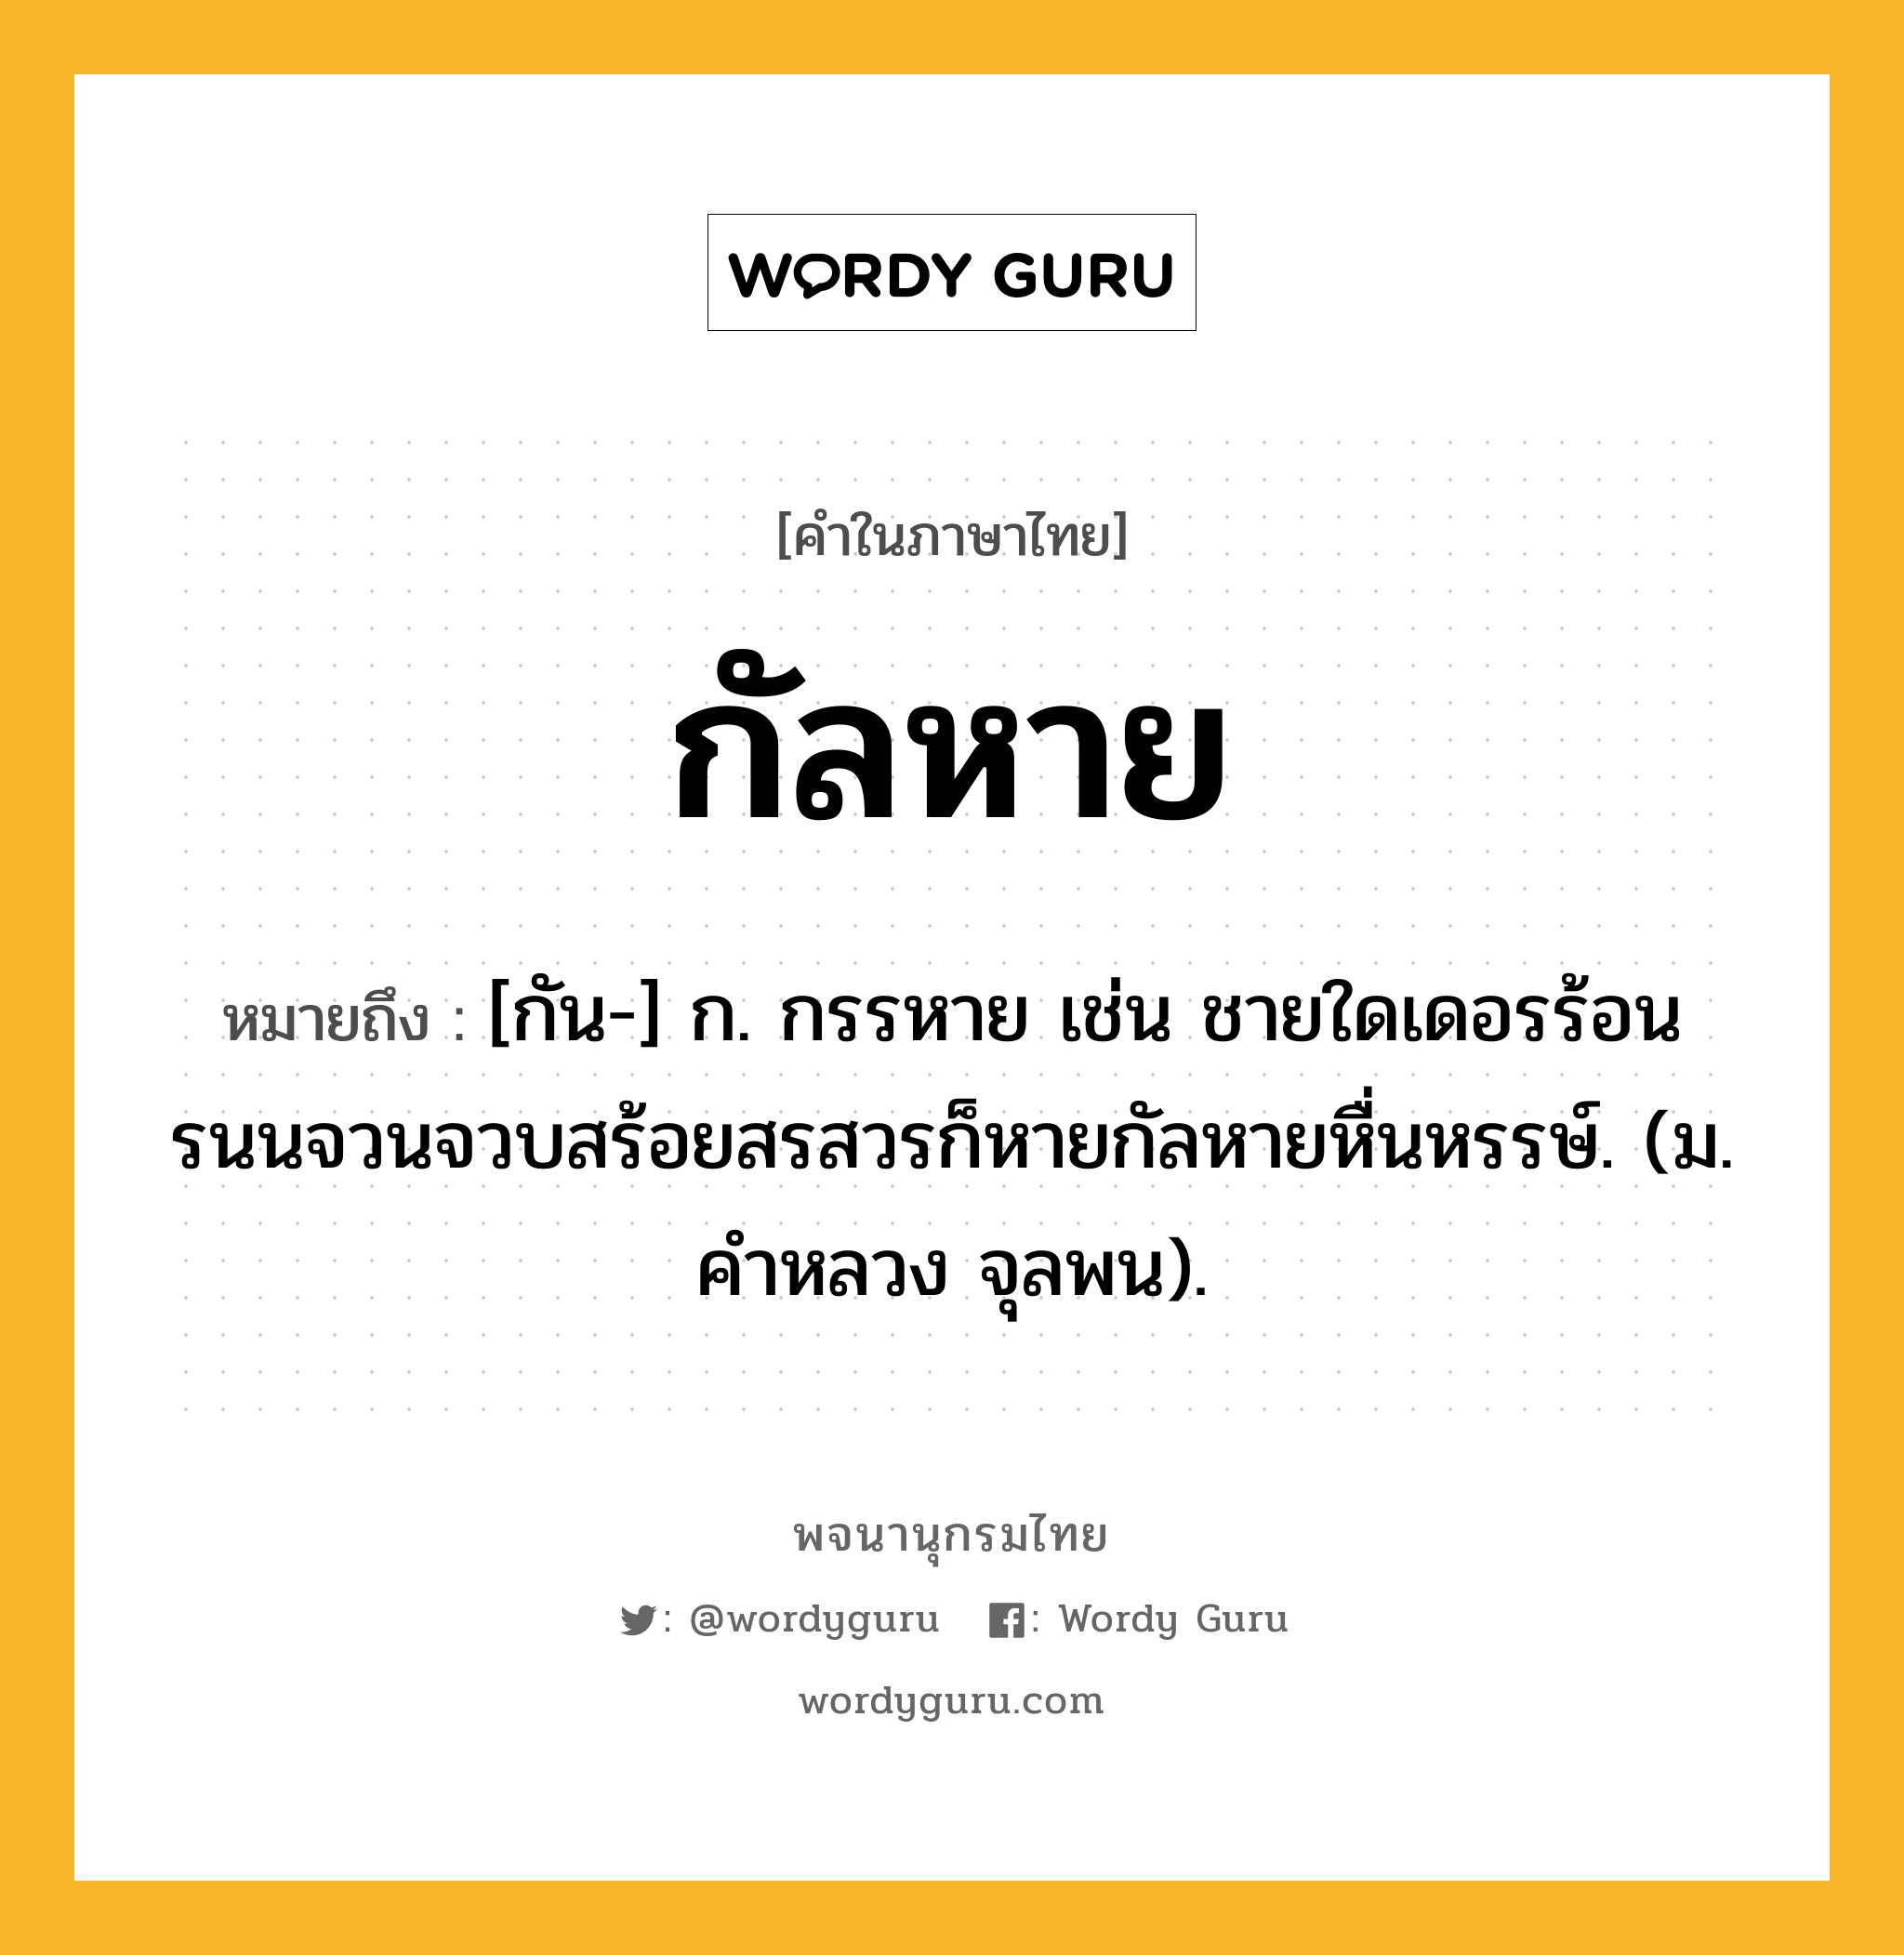 กัลหาย ความหมาย หมายถึงอะไร?, คำในภาษาไทย กัลหาย หมายถึง [กัน-] ก. กรรหาย เช่น ชายใดเดอรร้อนรนนจวนจวบสร้อยสรสวรก็หายกัลหายหื่นหรรษ์. (ม. คําหลวง จุลพน).